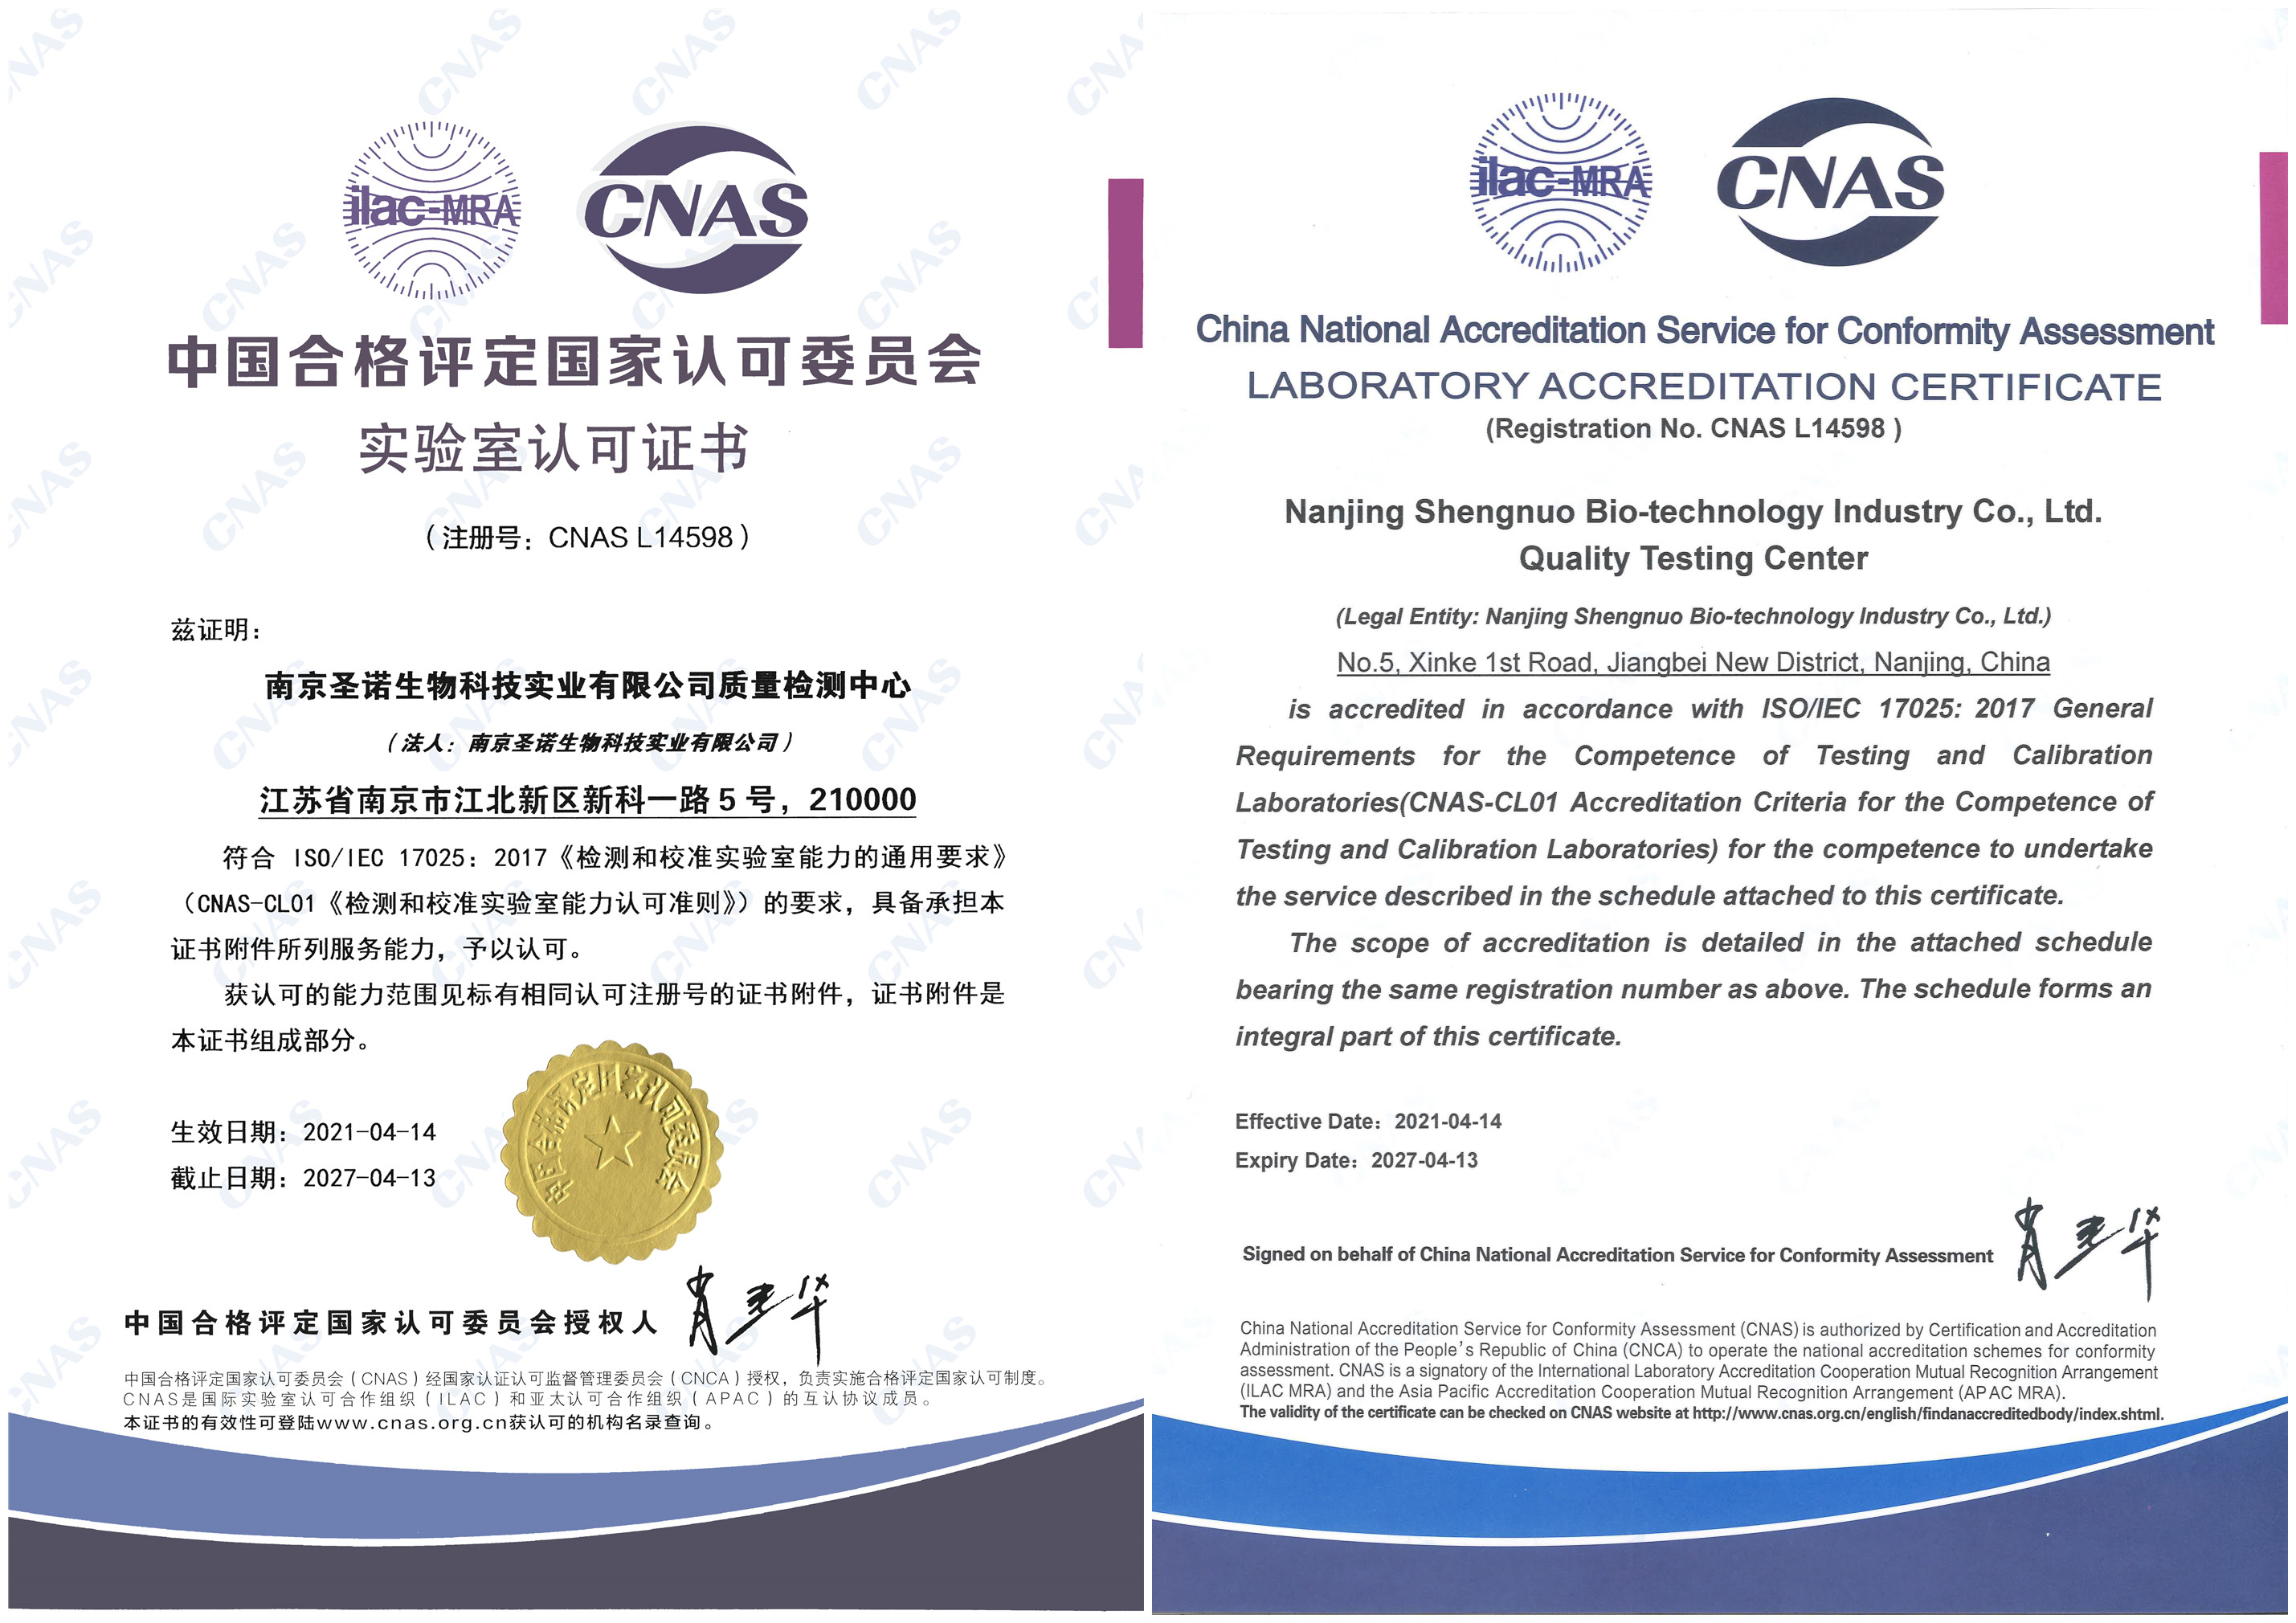 热烈祝贺公司质量检测中心顺利获得CNAS国家实验室认可证书